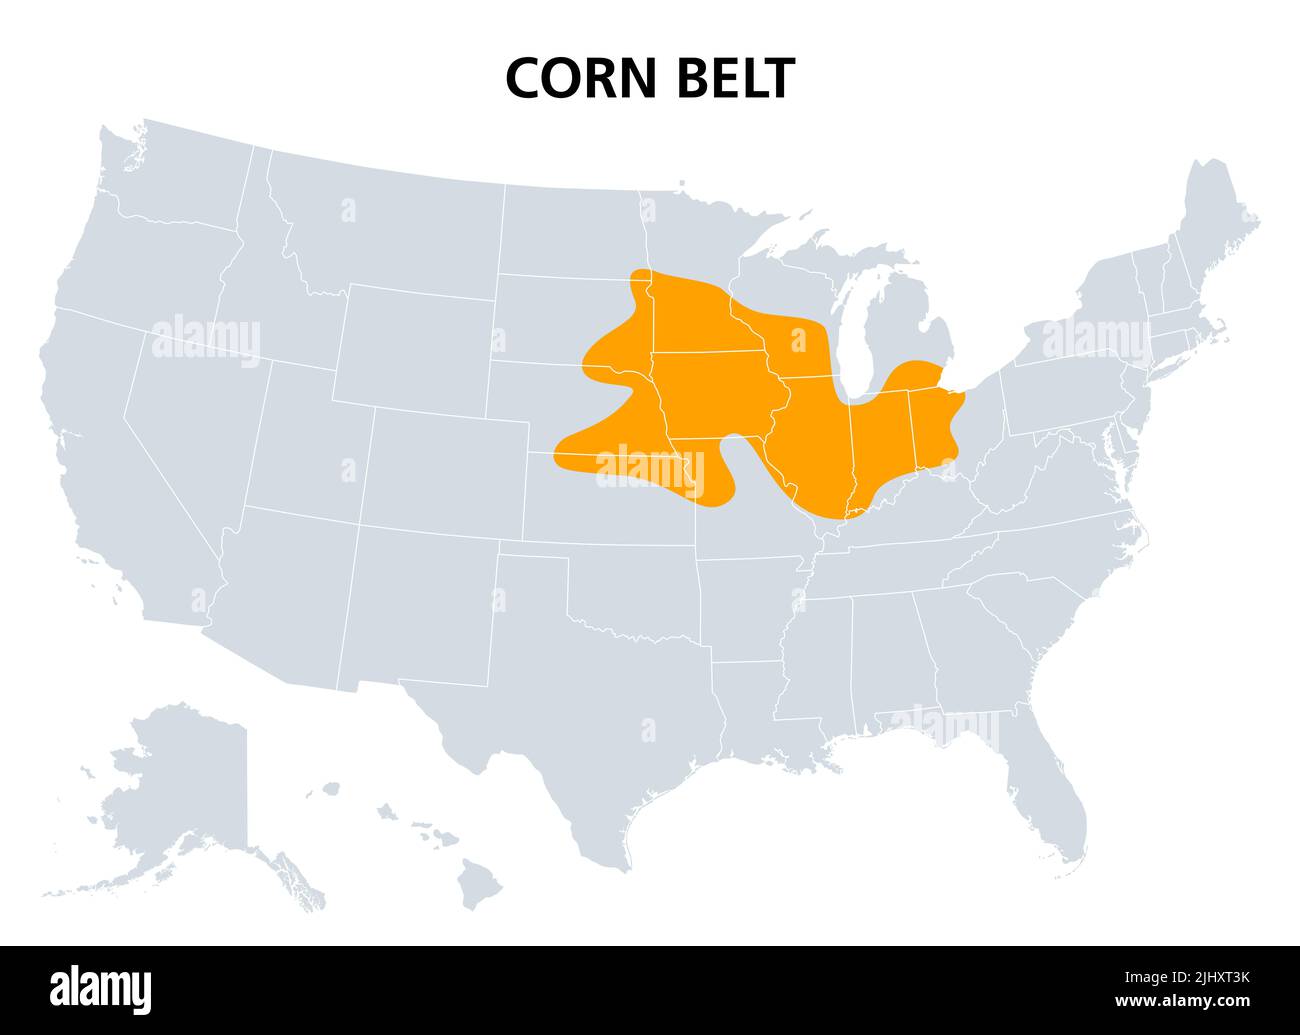 Cinghia del mais degli Stati Uniti, mappa politica. La regione del Midwest americano dove il mais è la coltura dominante. Foto Stock